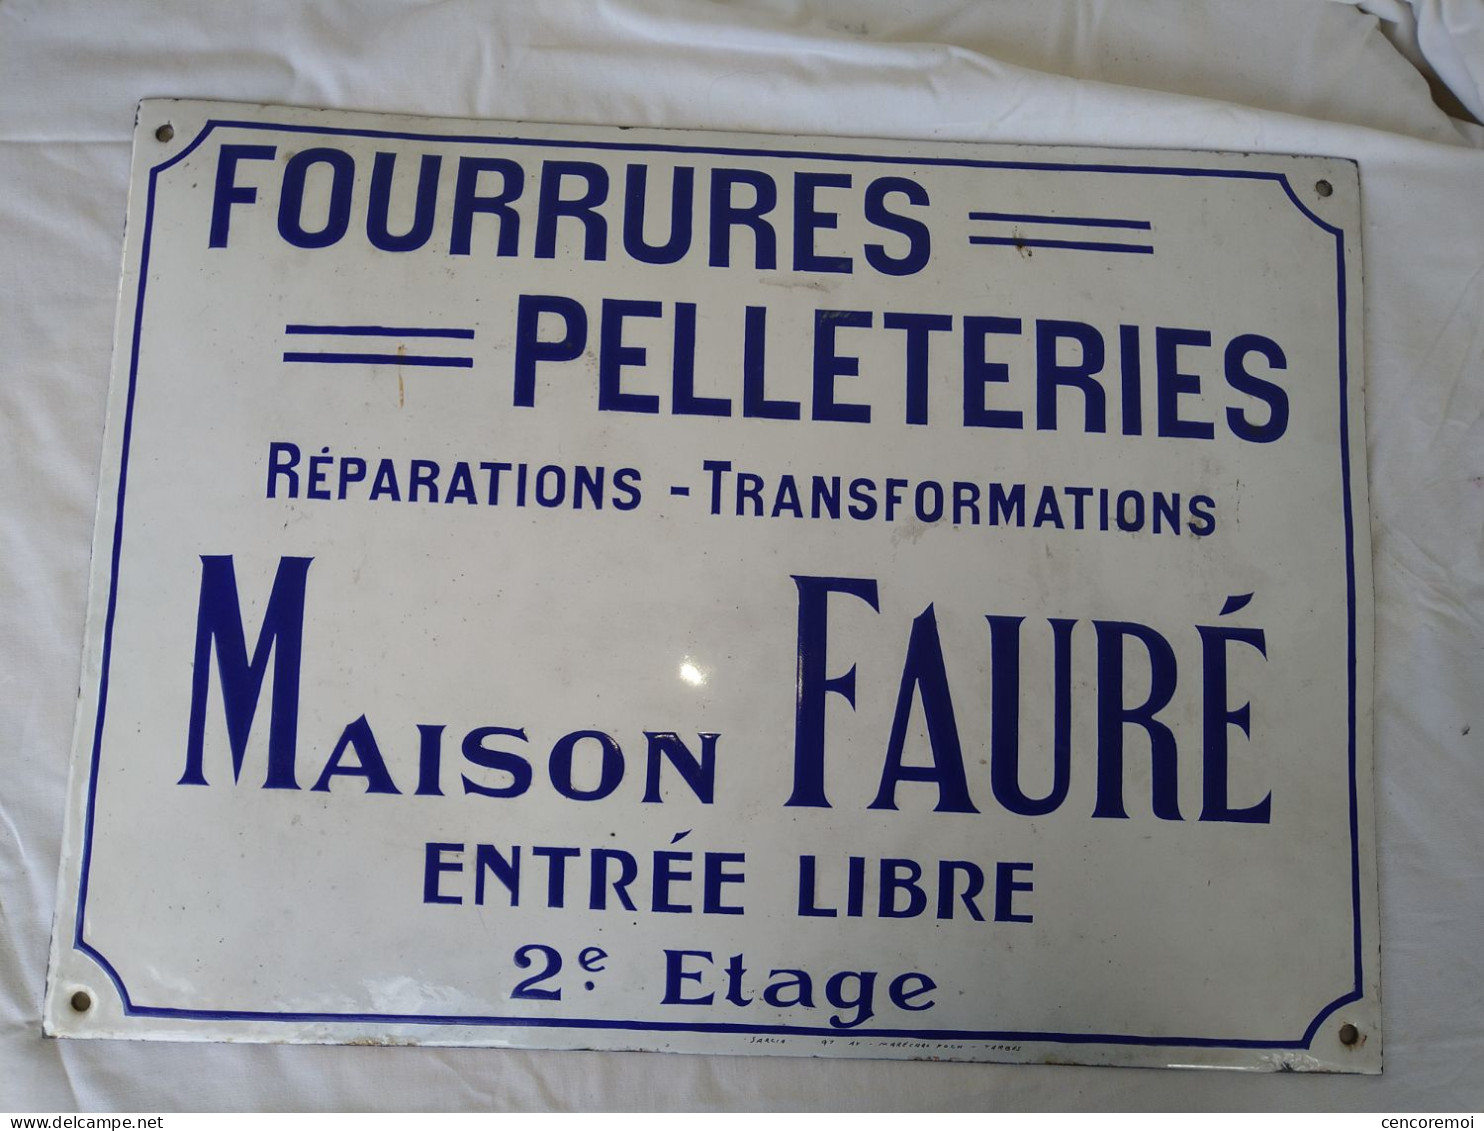 Très Belle Plaque émaillée Ancienne Maison Fauré, Fabriqué à Tarbes, Vêtement, Sud-Ouest - Kleidung